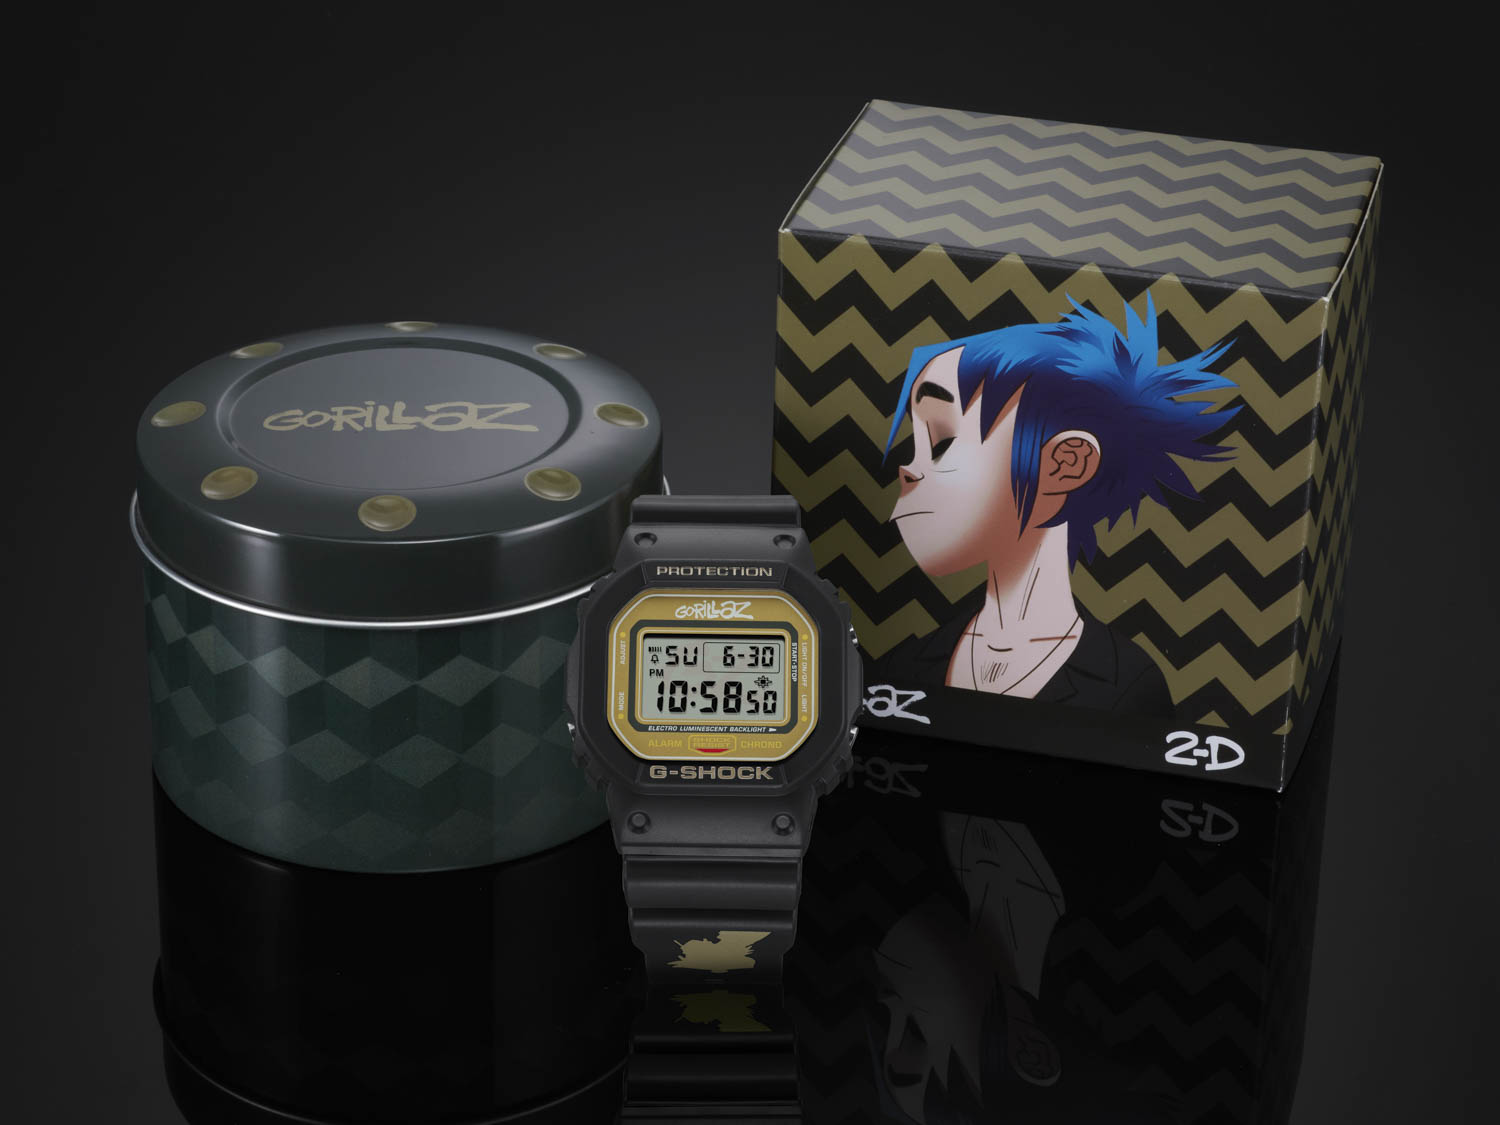 2-D's Casio G-Shock x Gorillaz Collab